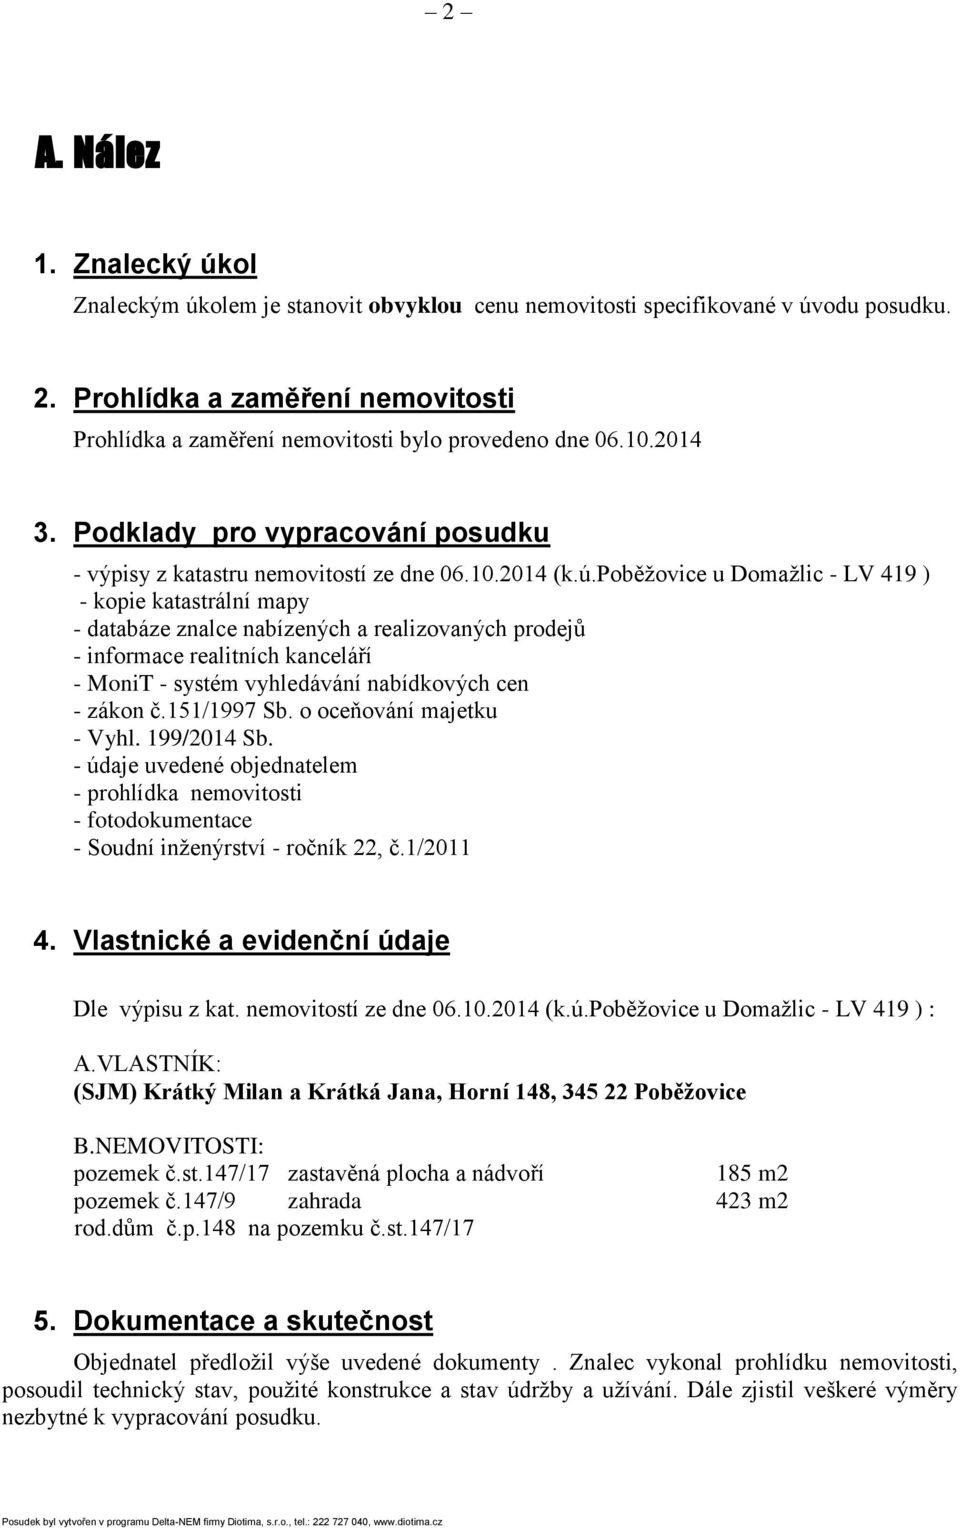 poběžovice u Domažlic - LV 419 ) - kopie katastrální mapy - databáze znalce nabízených a realizovaných prodejů - informace realitních kanceláří - MoniT - systém vyhledávání nabídkových cen - zákon č.